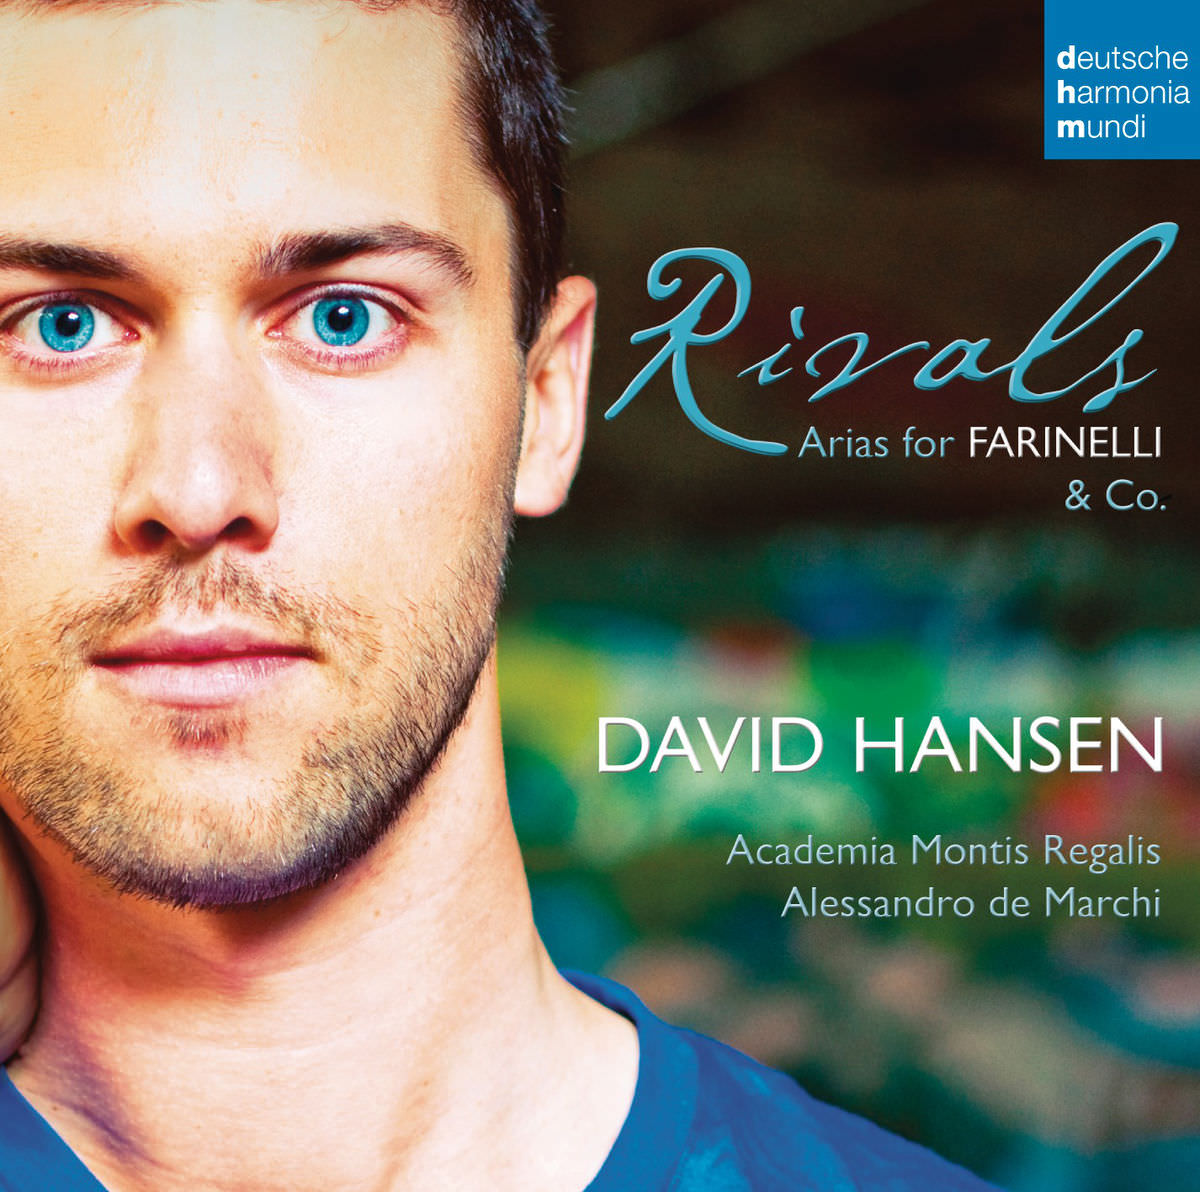 David Hansen - Rivals - Arias for Farinelli & Co. (2013) [FLAC 24bit/96kHz]